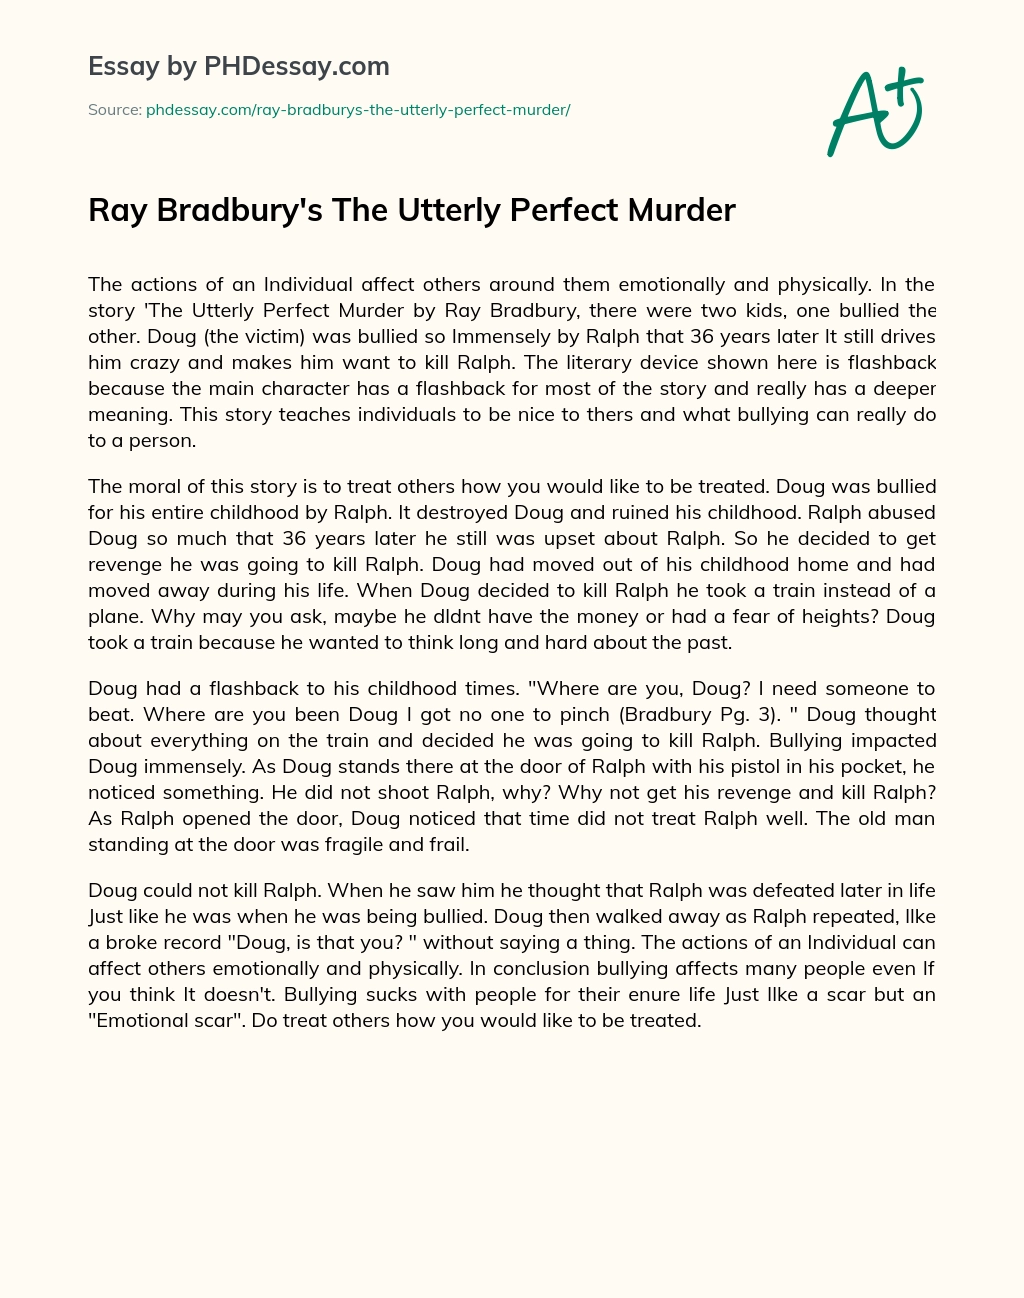 Ray Bradbury’s The Utterly Perfect Murder essay